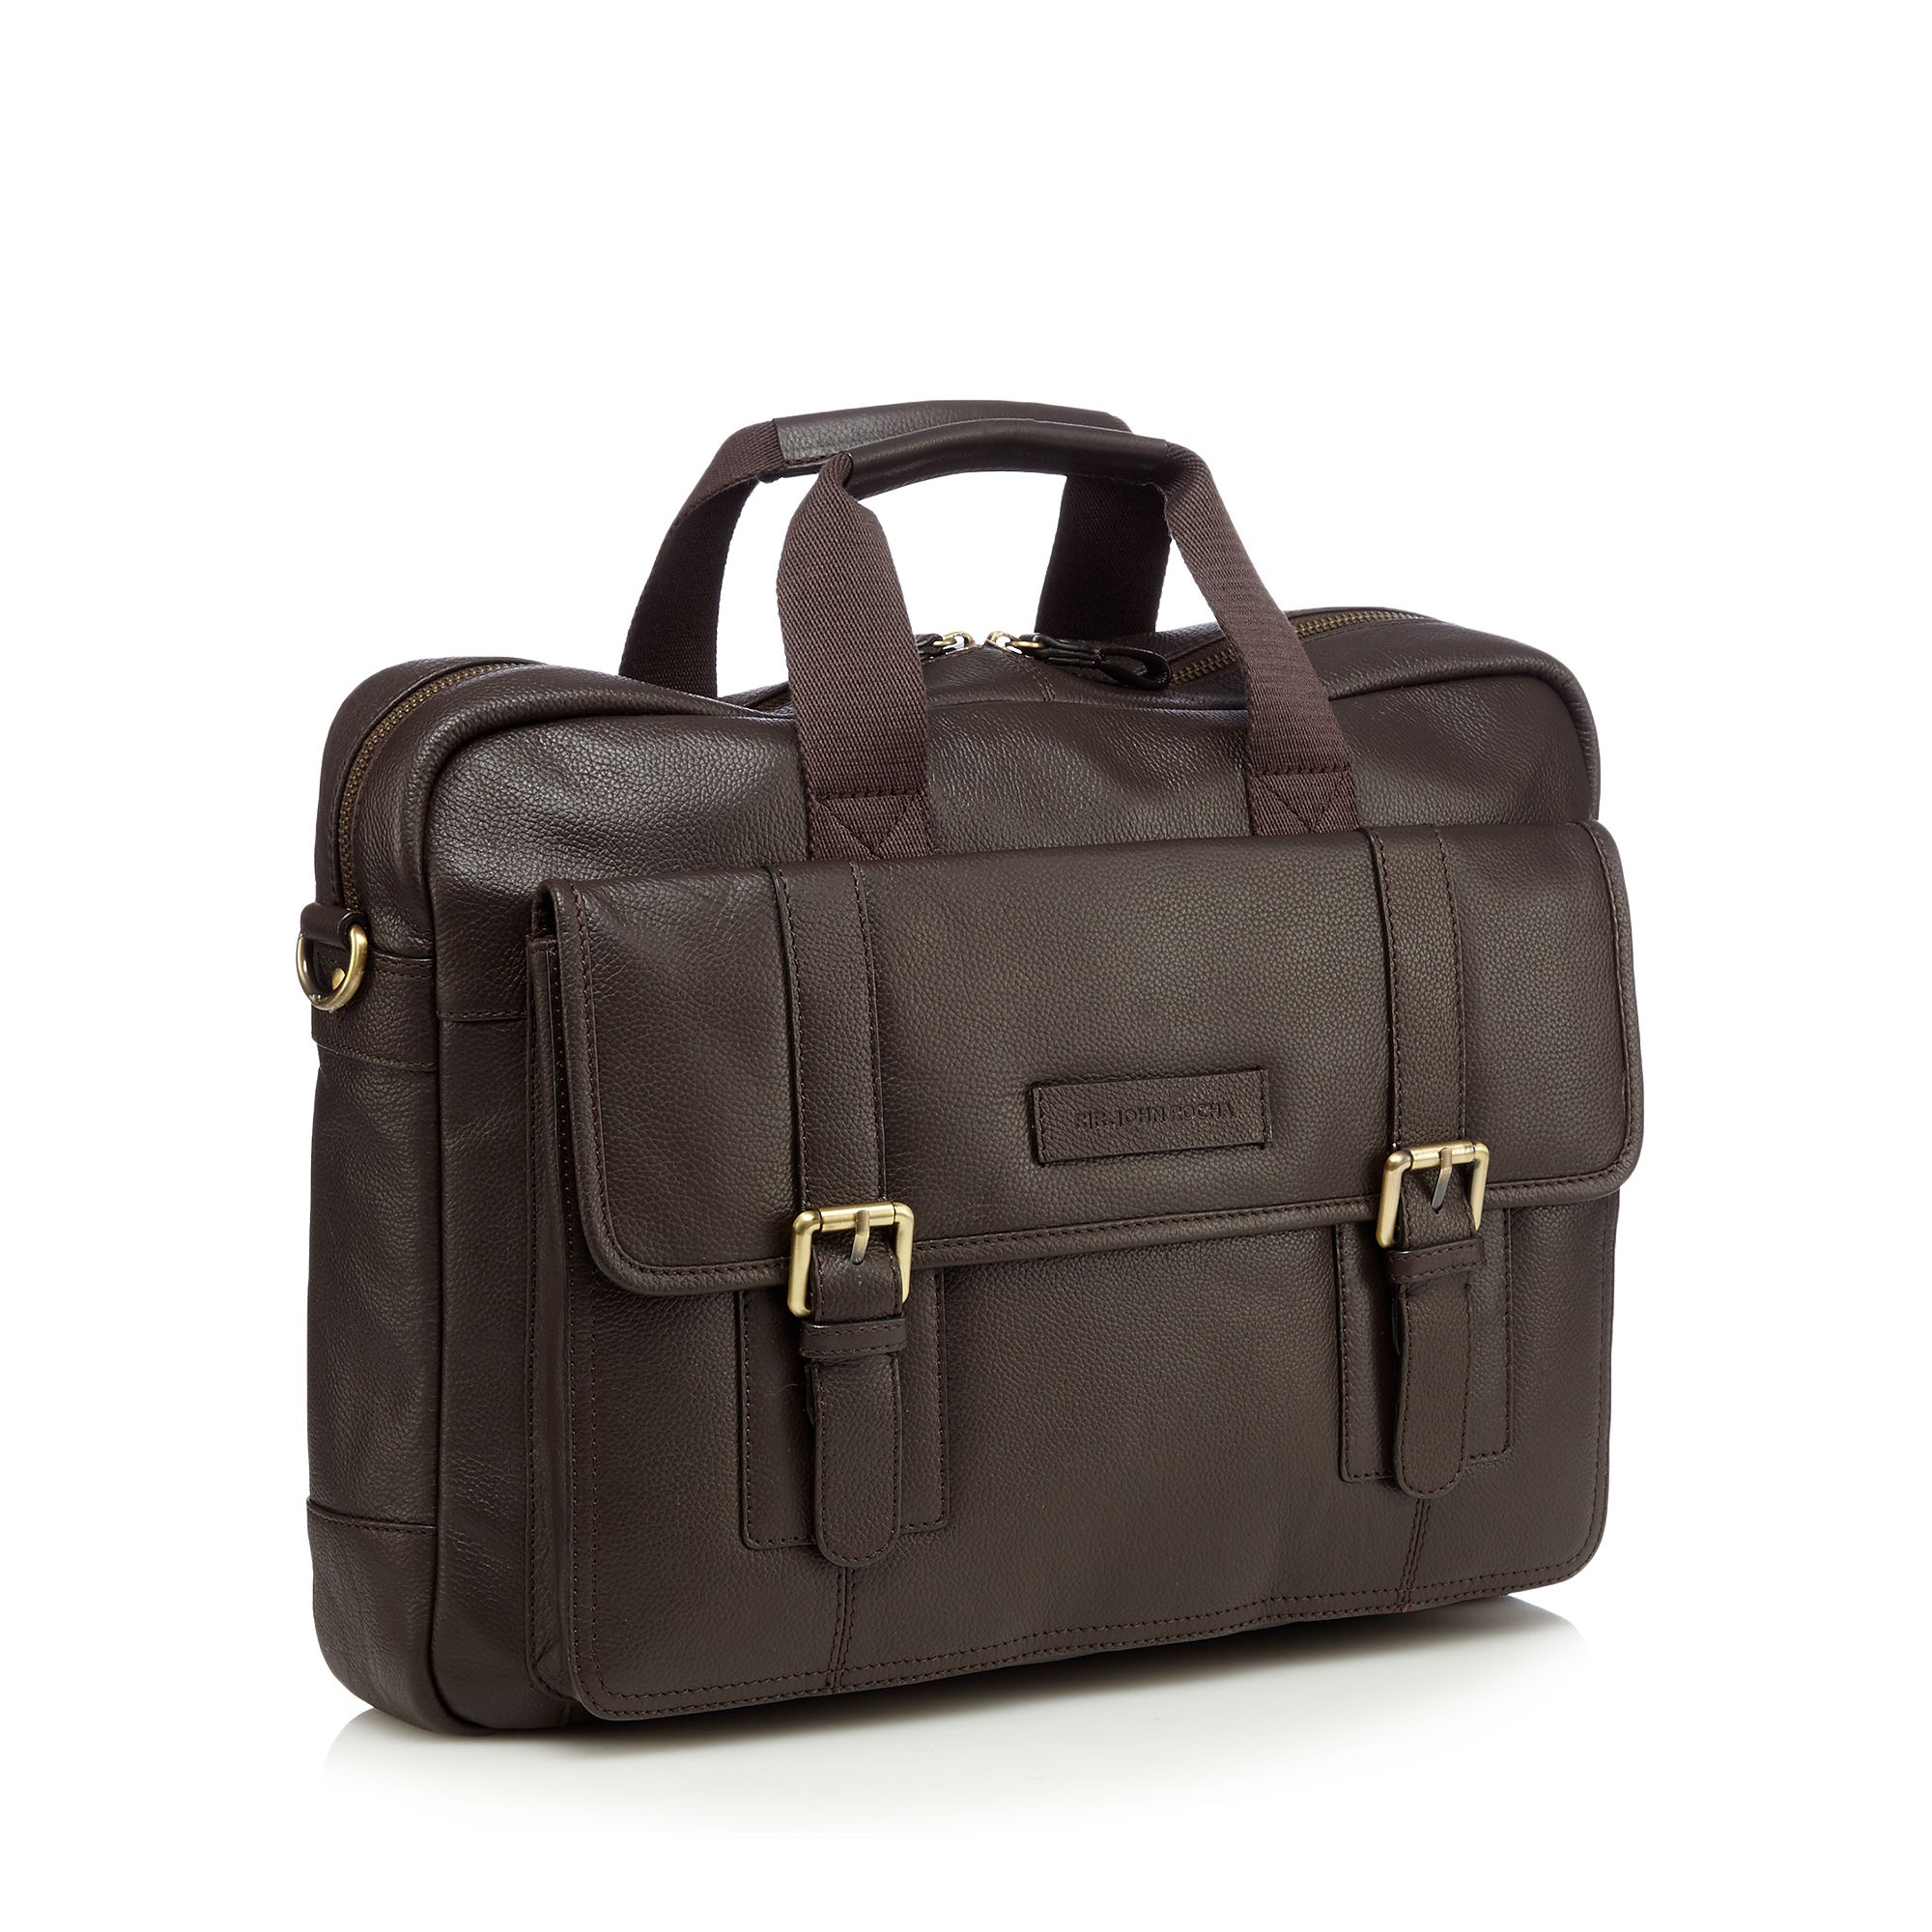 Rjr.John Rocha Mens Designer Dark Brown Soft Leather Business Bag From Debenhams | eBay